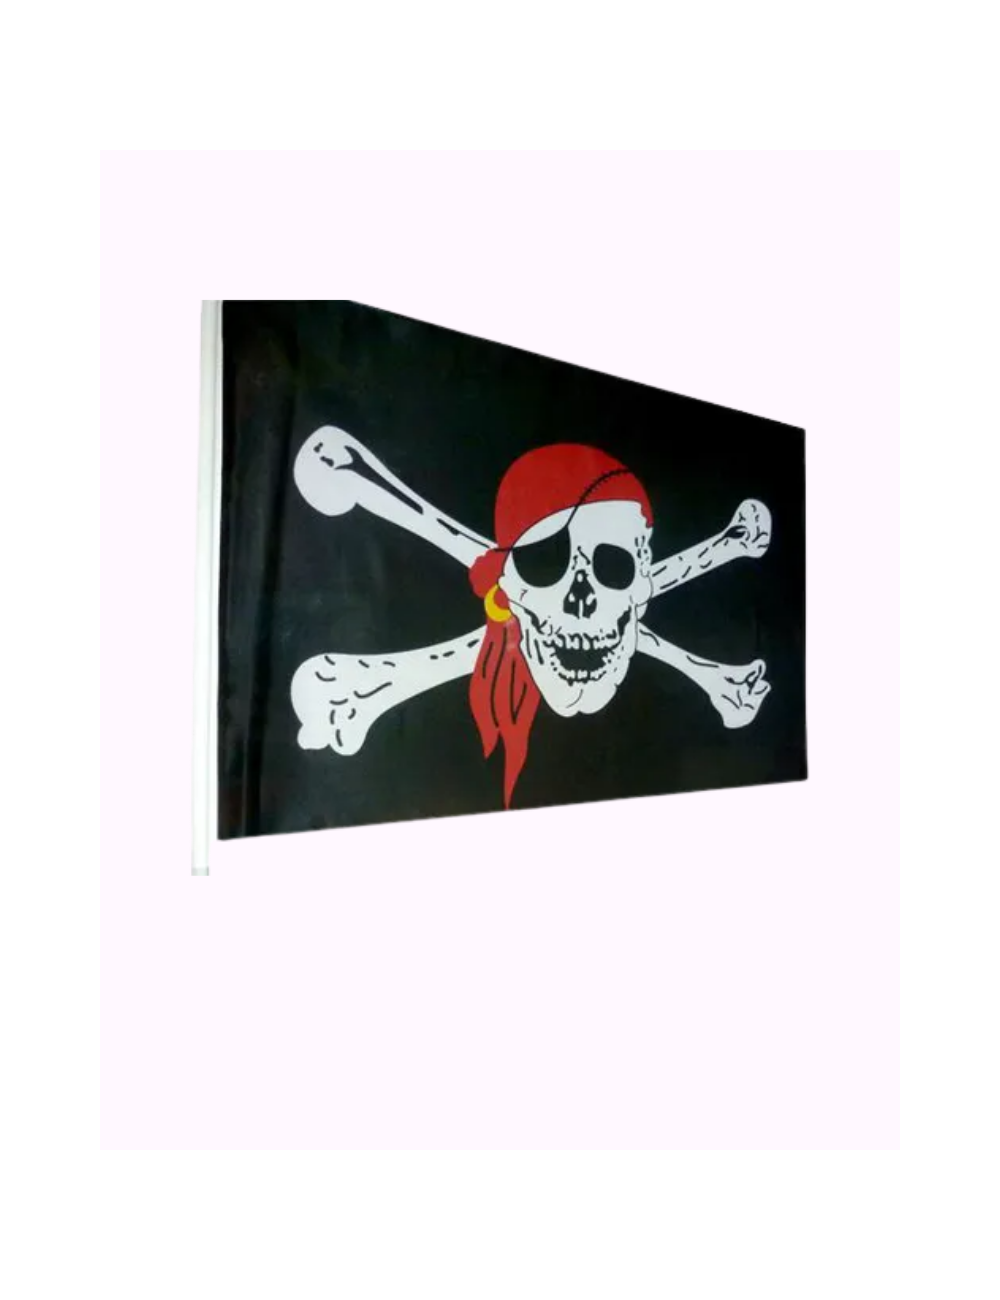 Piratenflagge mit Hampe